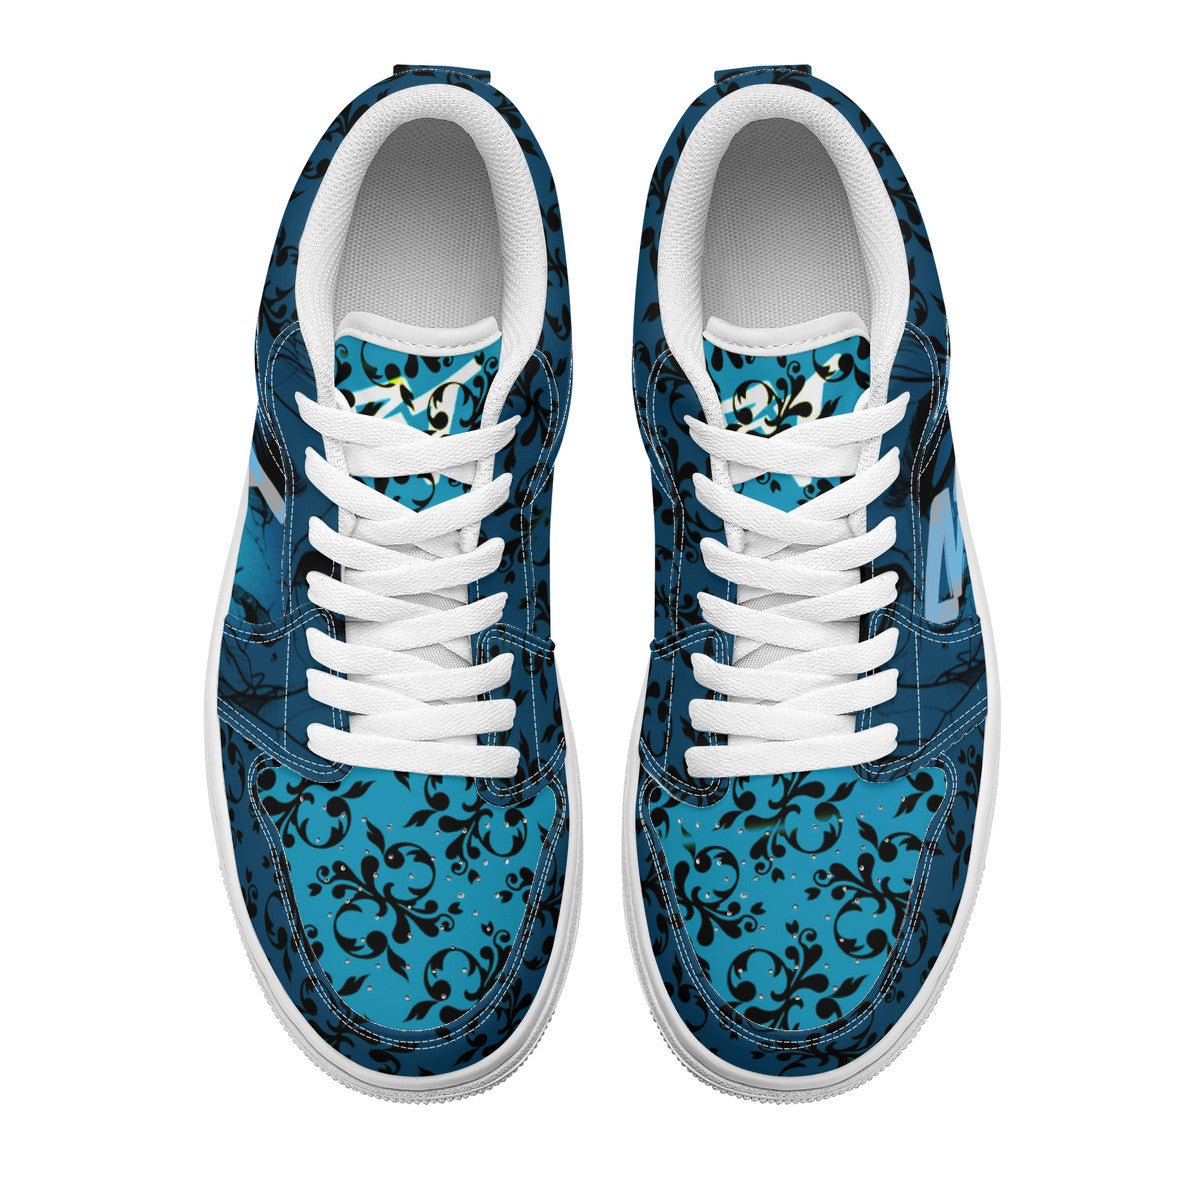 Unisex Low Top Skateboard Sneakers - FrSkull Blue